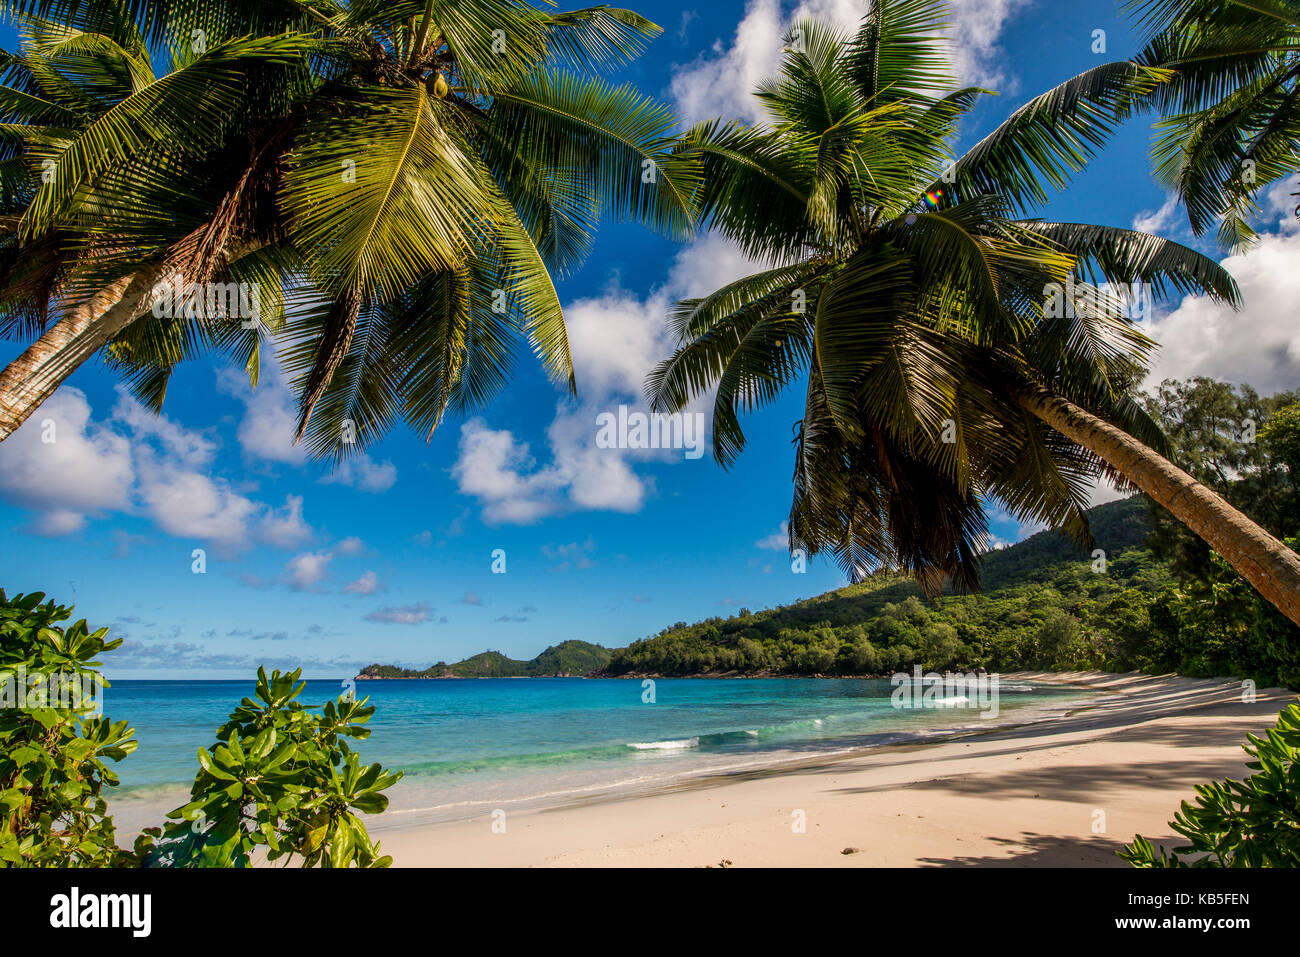 La police petit bay beach, Mahe, Seychelles, océan indien, afrique Banque D'Images